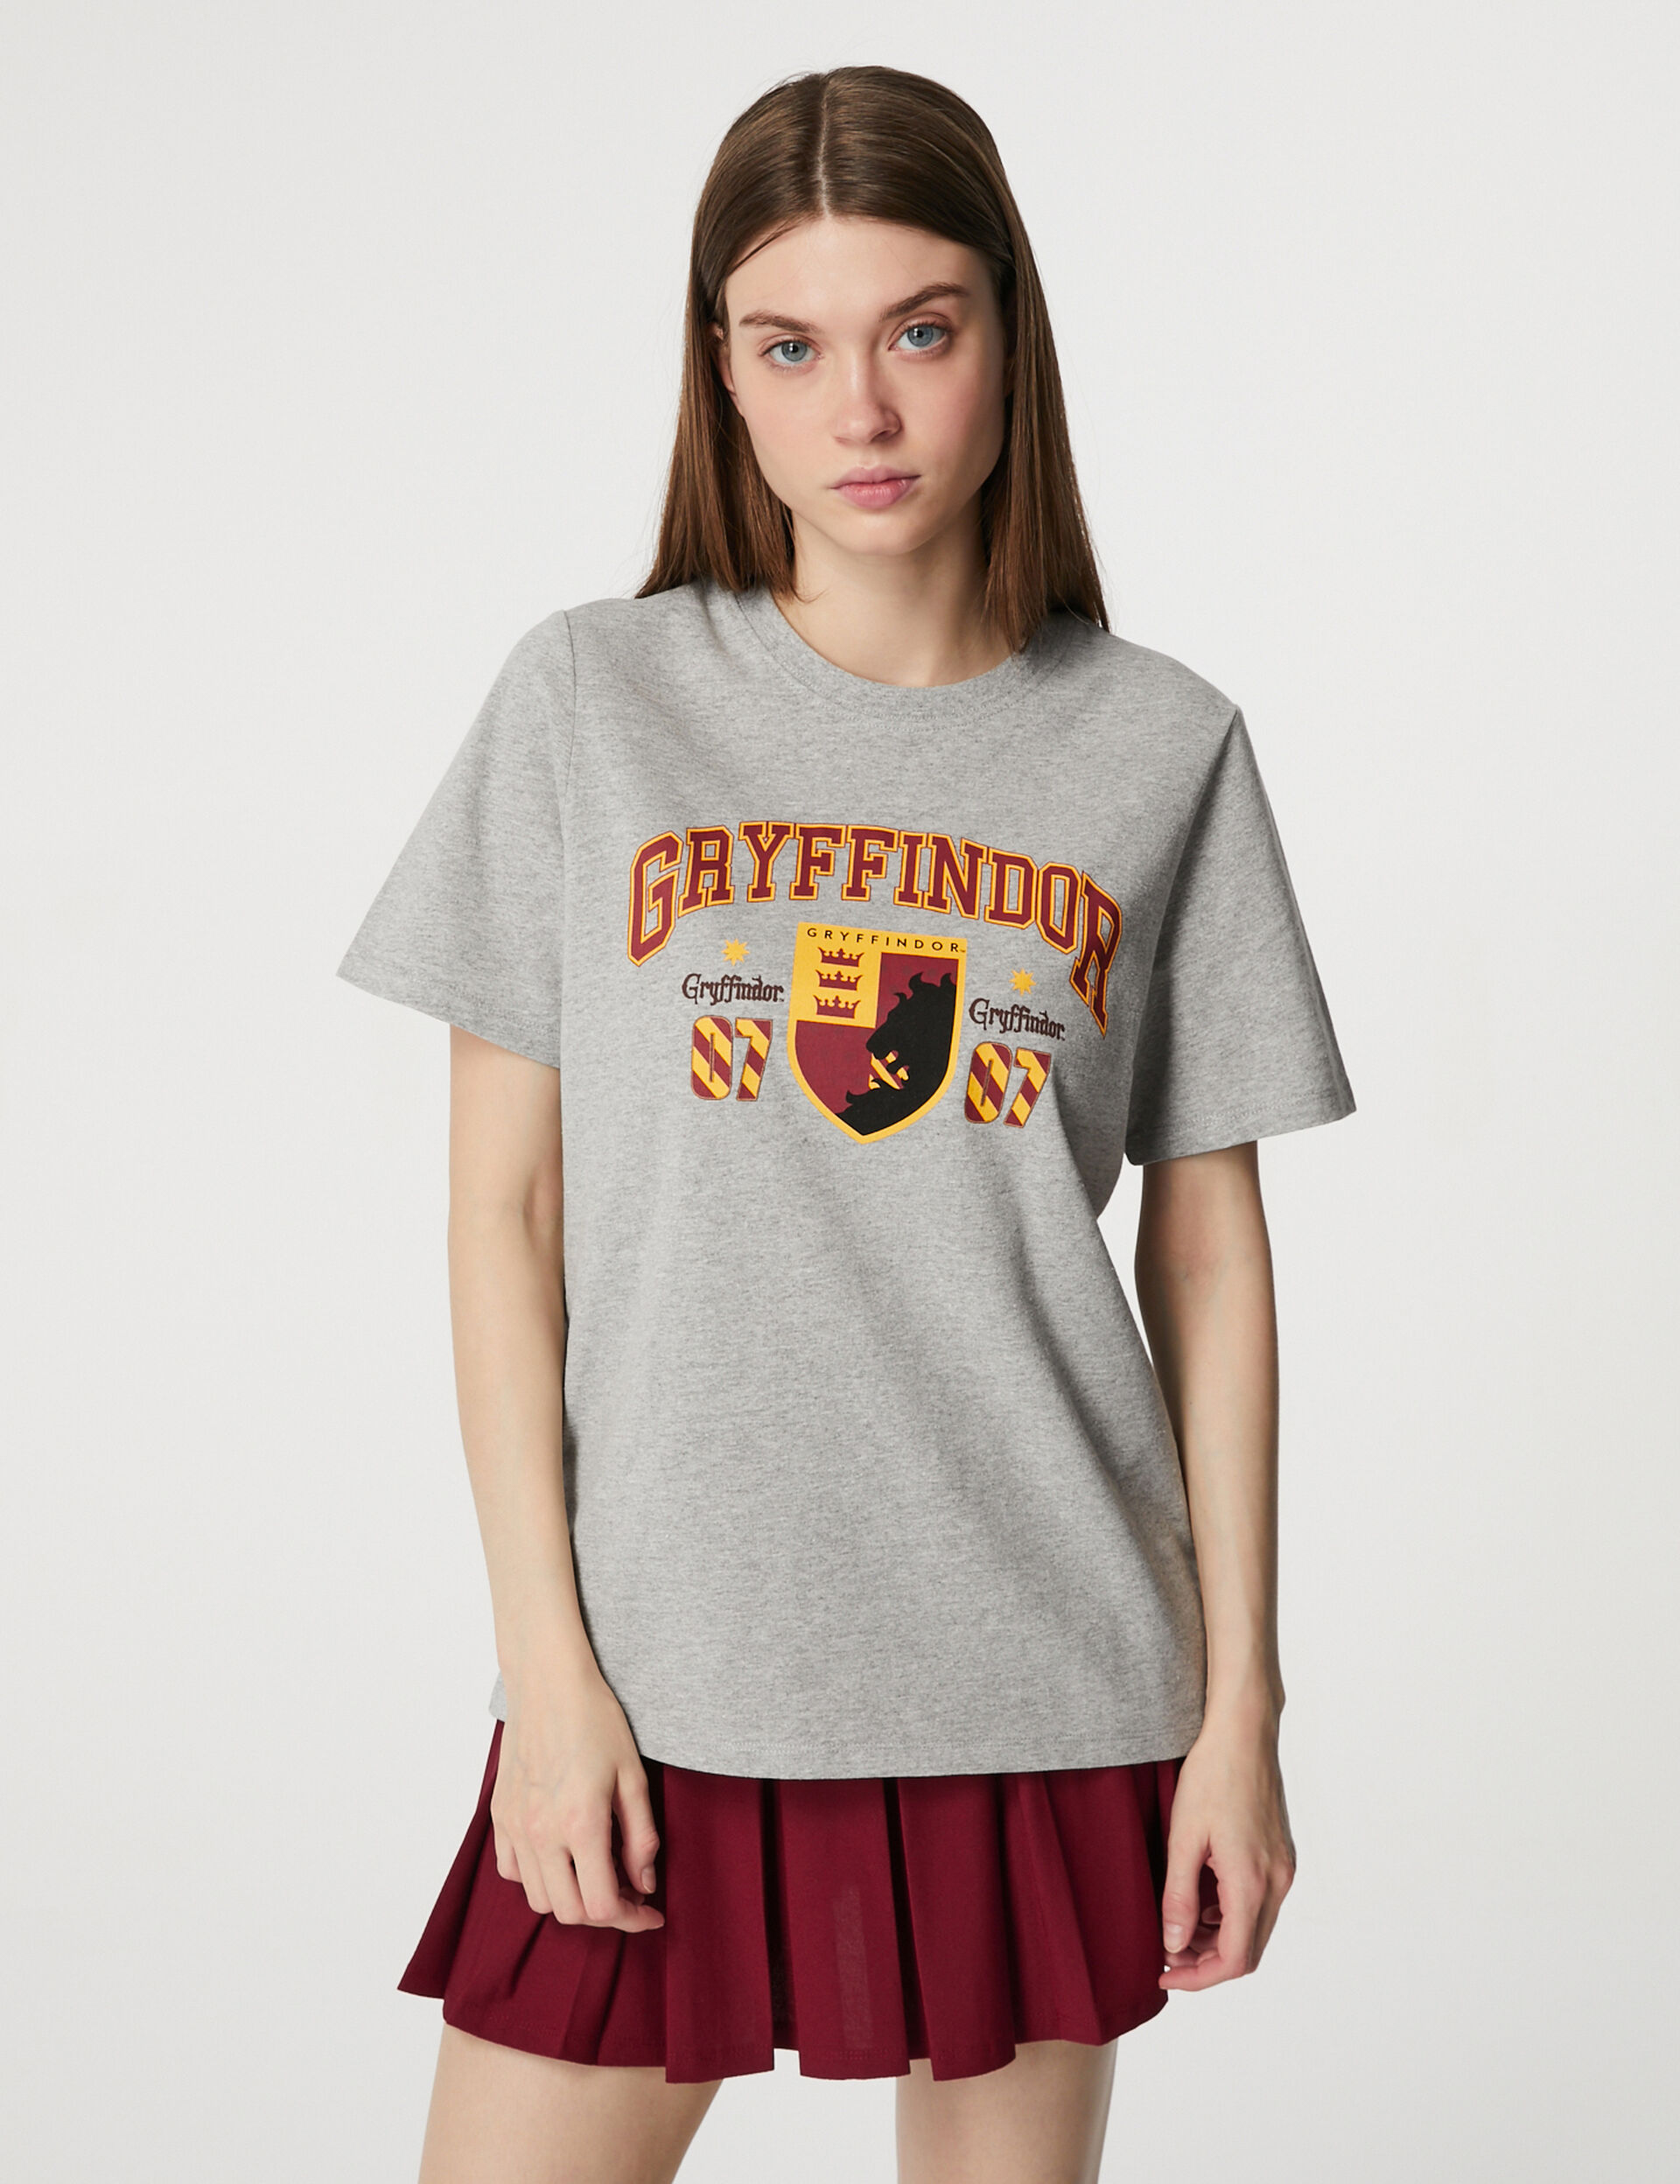 Harry Potter Gryffindor T-shirt